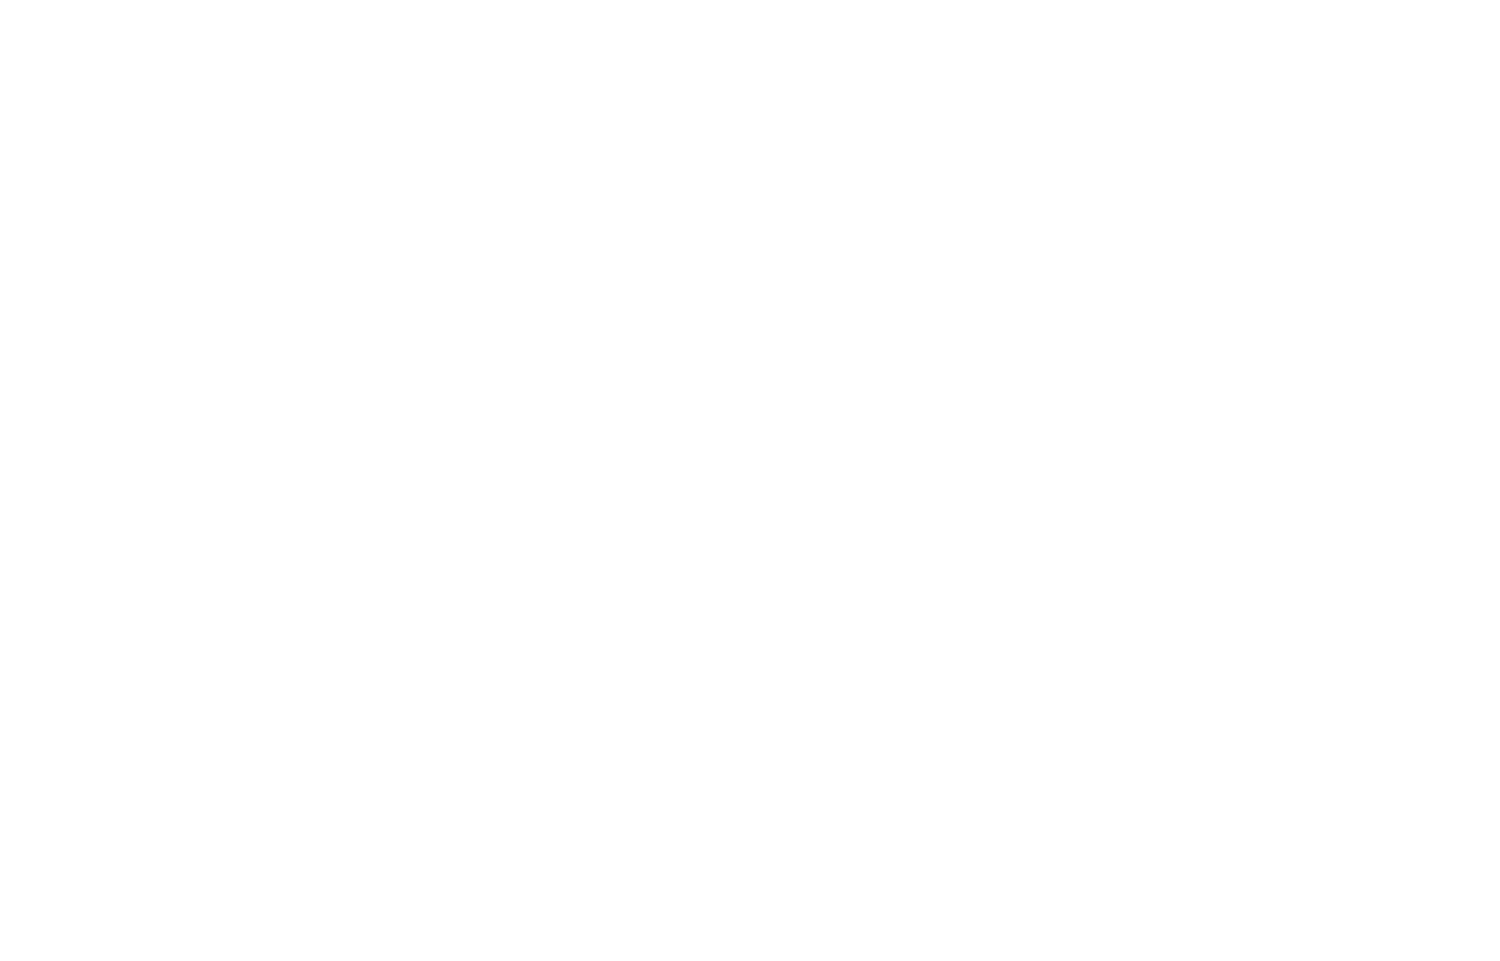 Cameron Wrinkle 